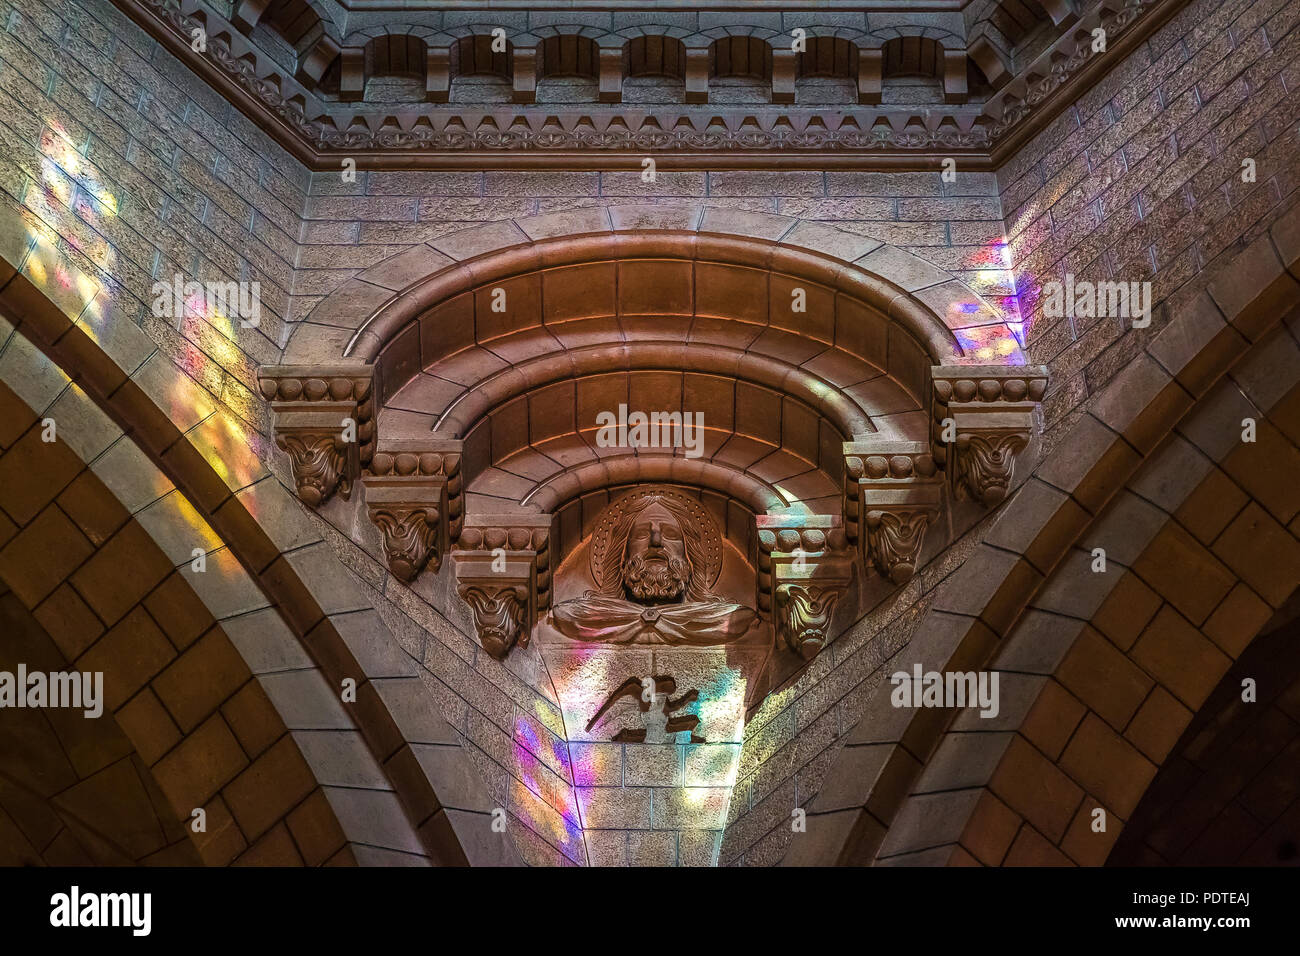 Intérieur de la cathédrale de Saint Nicolas, de style roman du 19e siècle cathédrale catholique, où l'image monégasque, les Grimaldi, comme Grace Kelly et Princ Banque D'Images